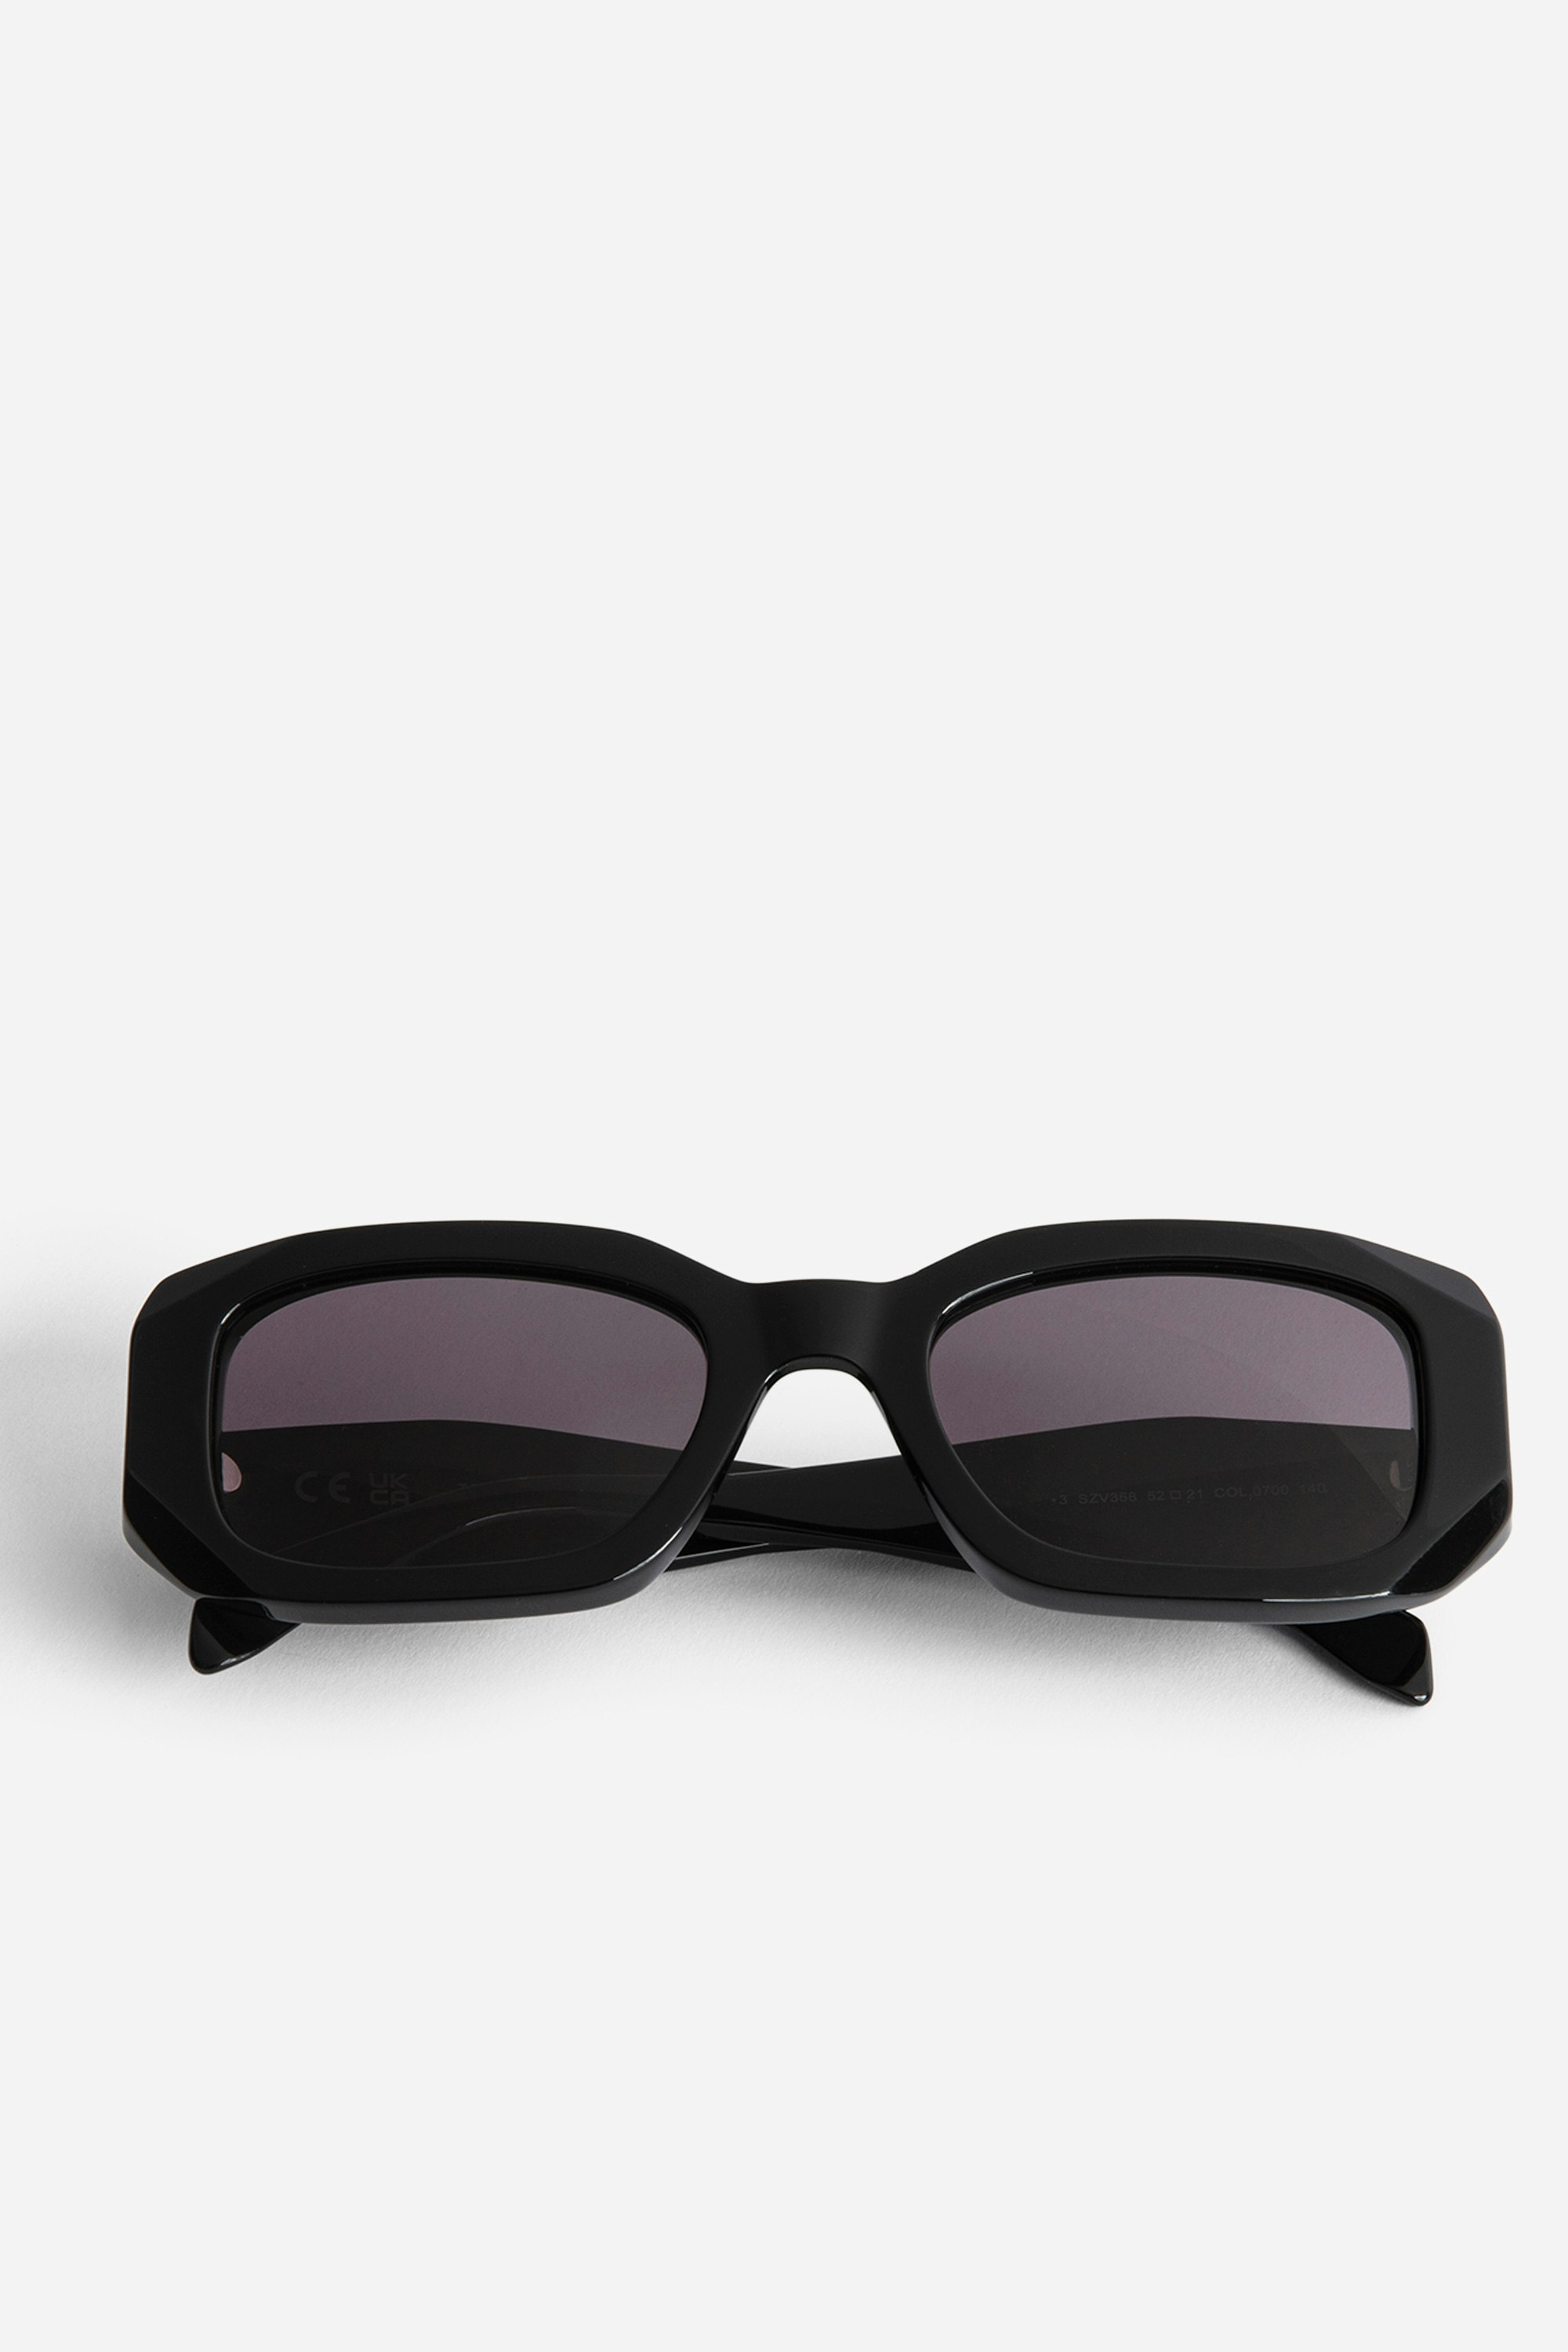 Sonnenbrille ZV23H3 Schwarze, rechteckige Unisex-Sonnenbrille mit Flügeln auf den destrukturierten Bügeln.